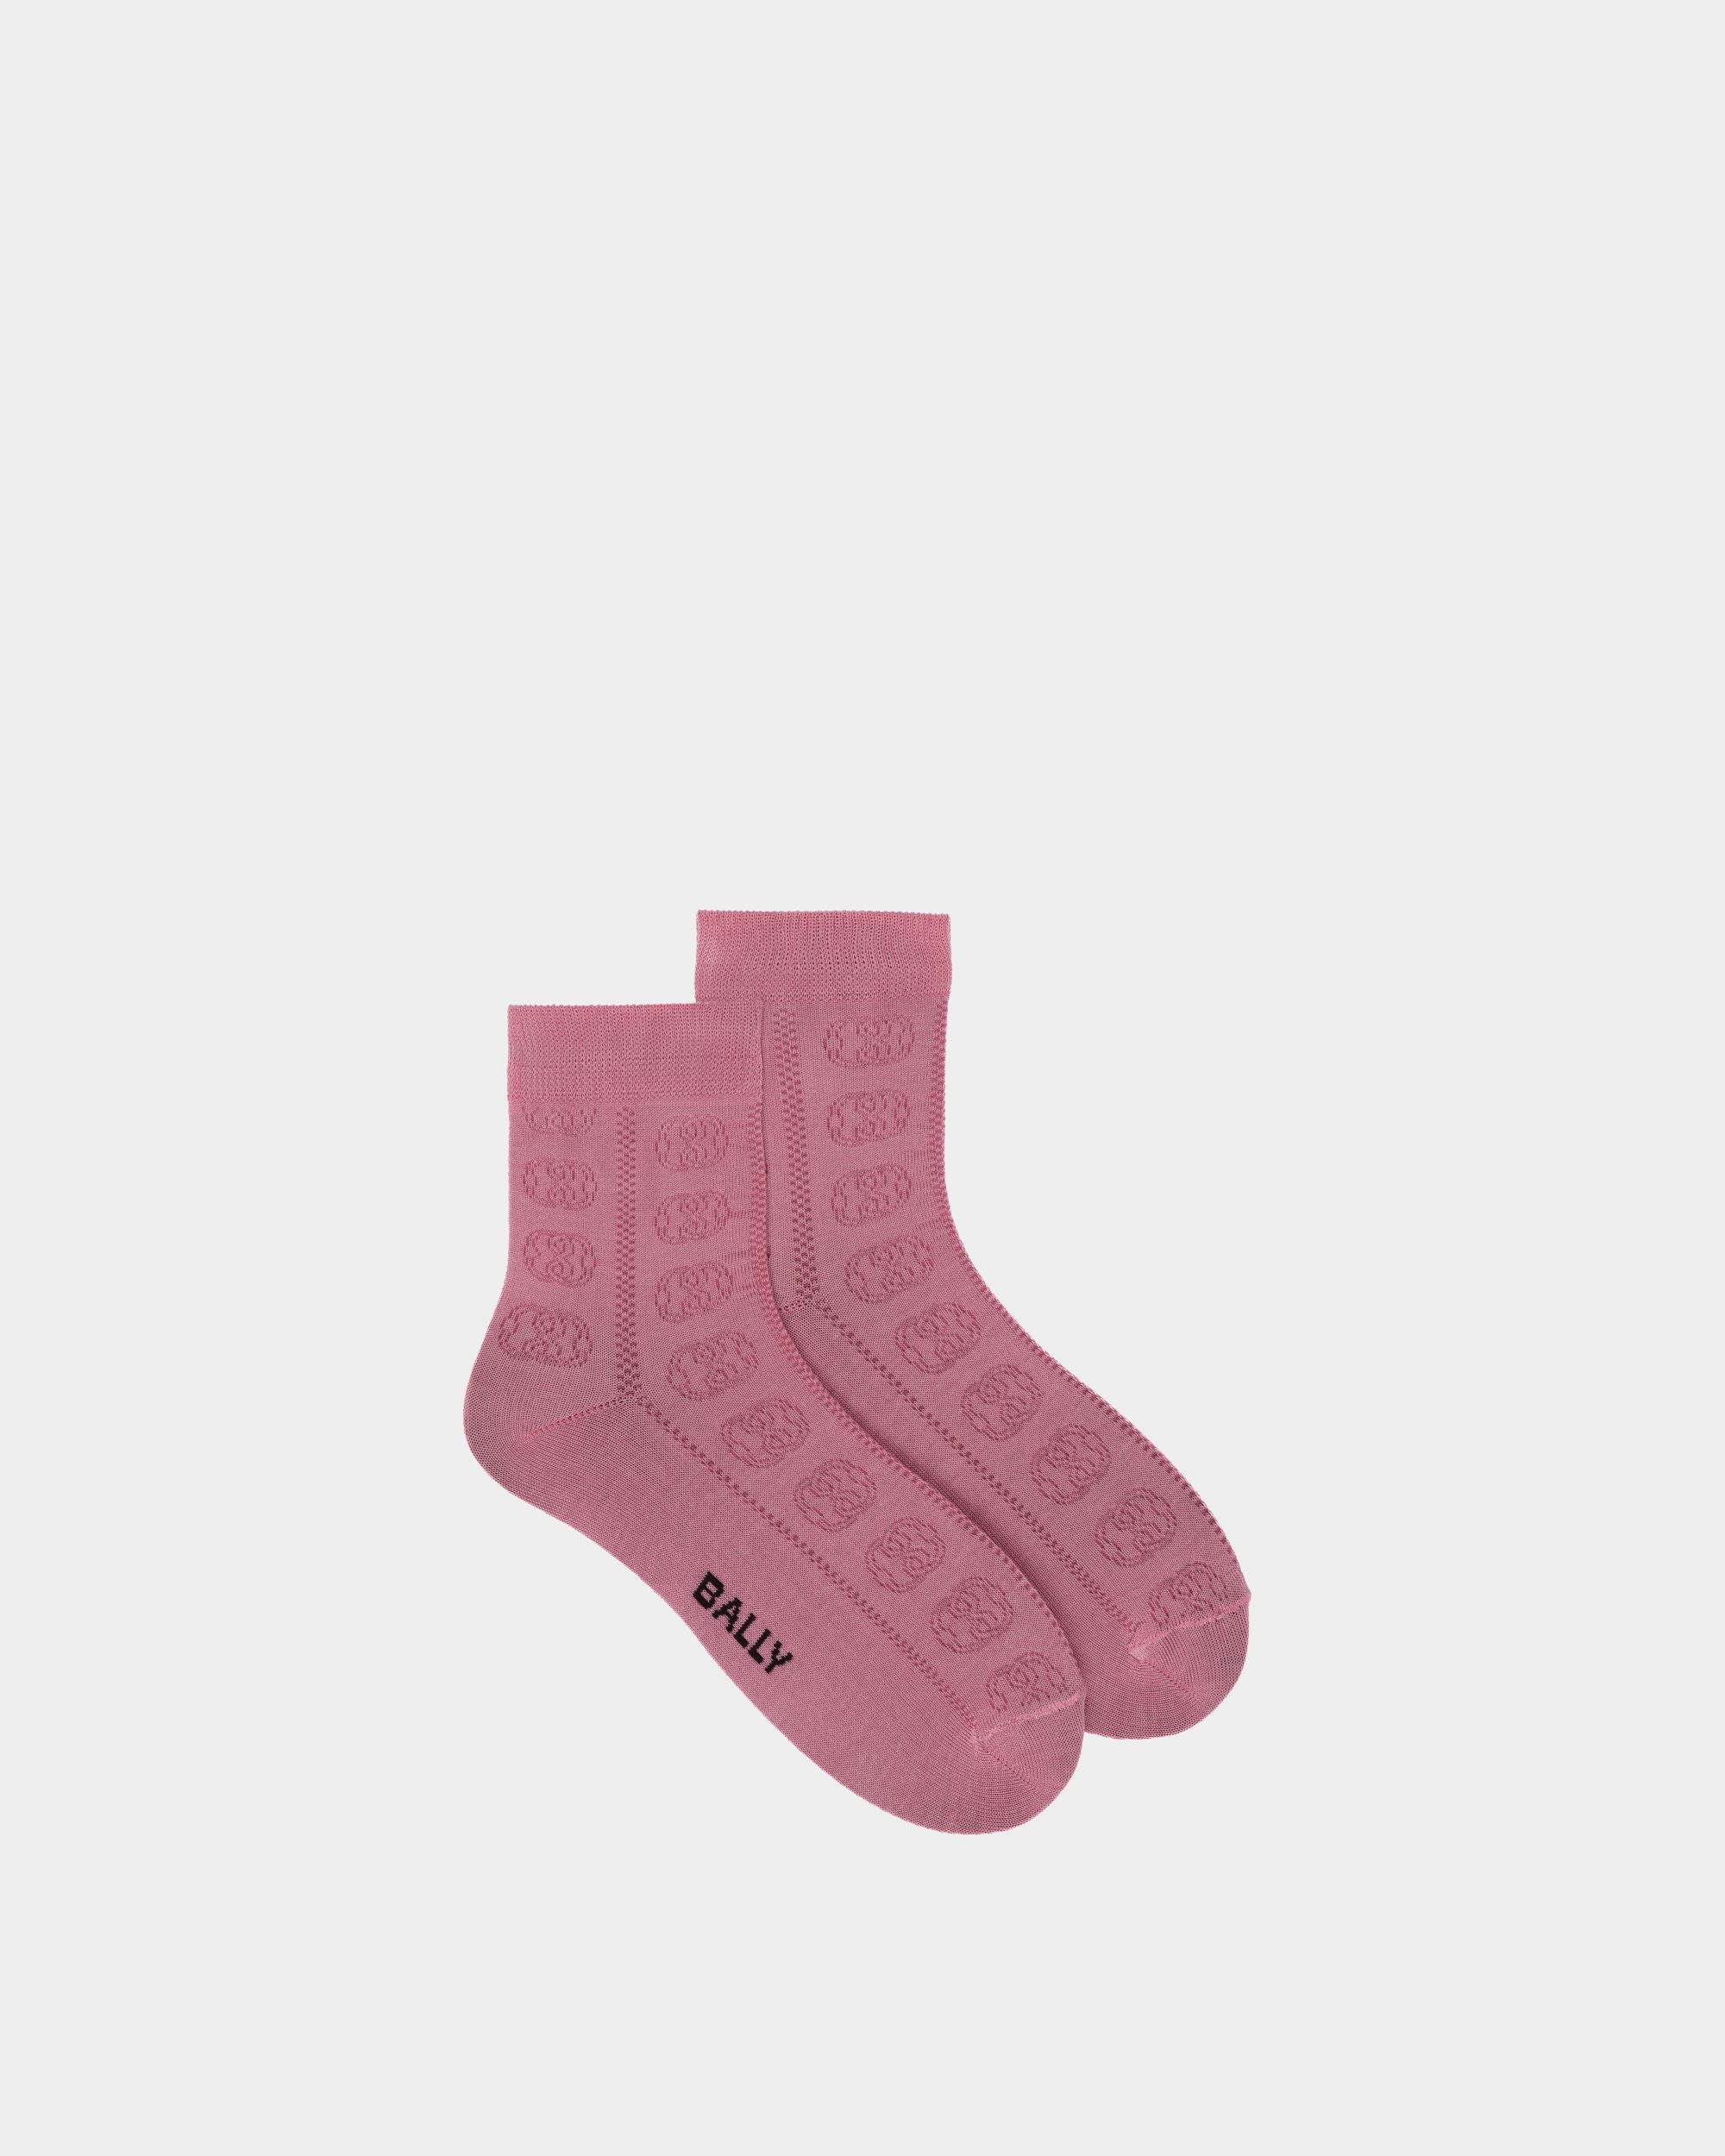 Calze da donna in cotone rosa con logo | Bally | Still Life Da sopra